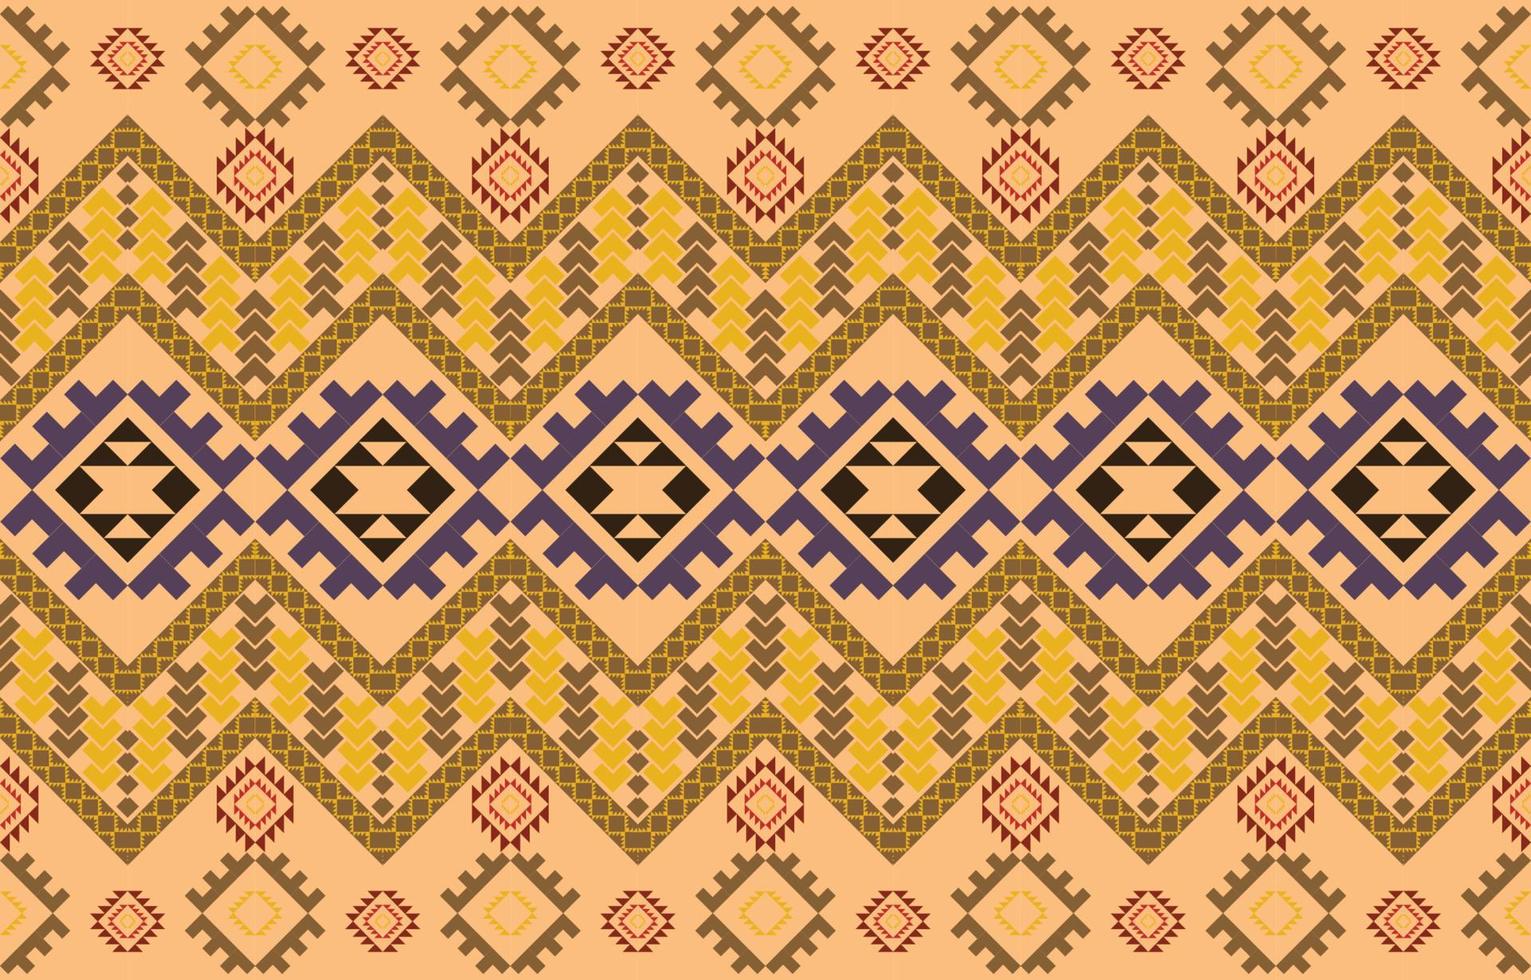 navajo stof naadloze patroon geometrische tribal etnische traditionele achtergrond, native american designelementen, ontwerp voor tapijt, behang, kleding, tapijt, interieur, vector illustratie borduurwerk.